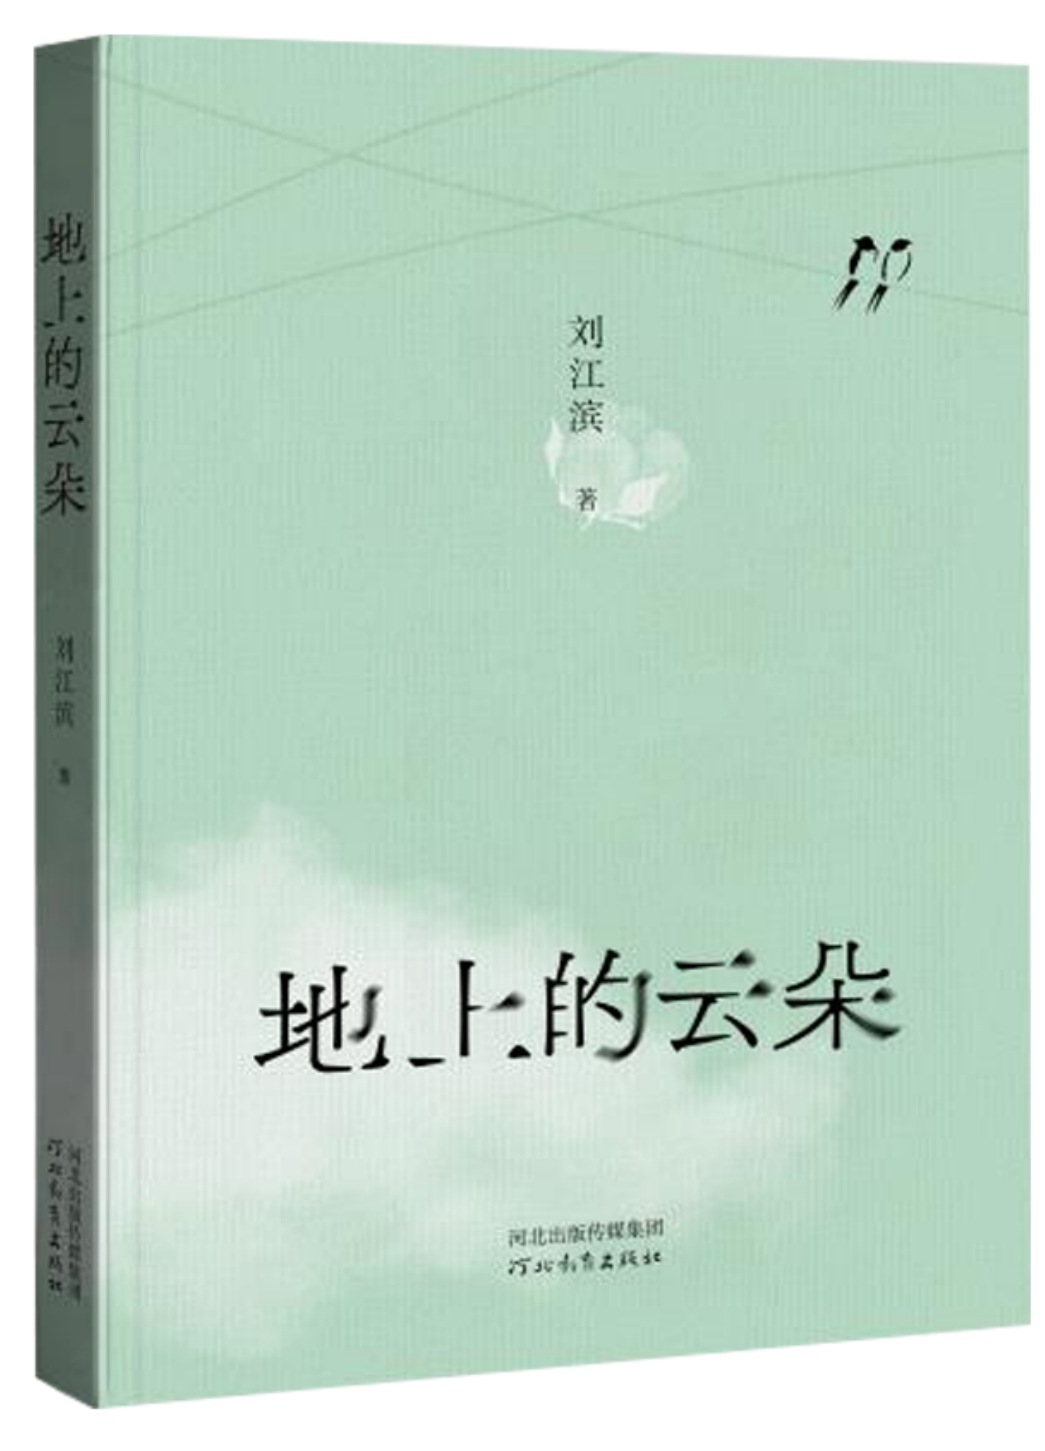 河北教育出版社推出刘江滨新作《地上的云朵》：兼具温情与哲思的文字为读者点亮心灵之灯